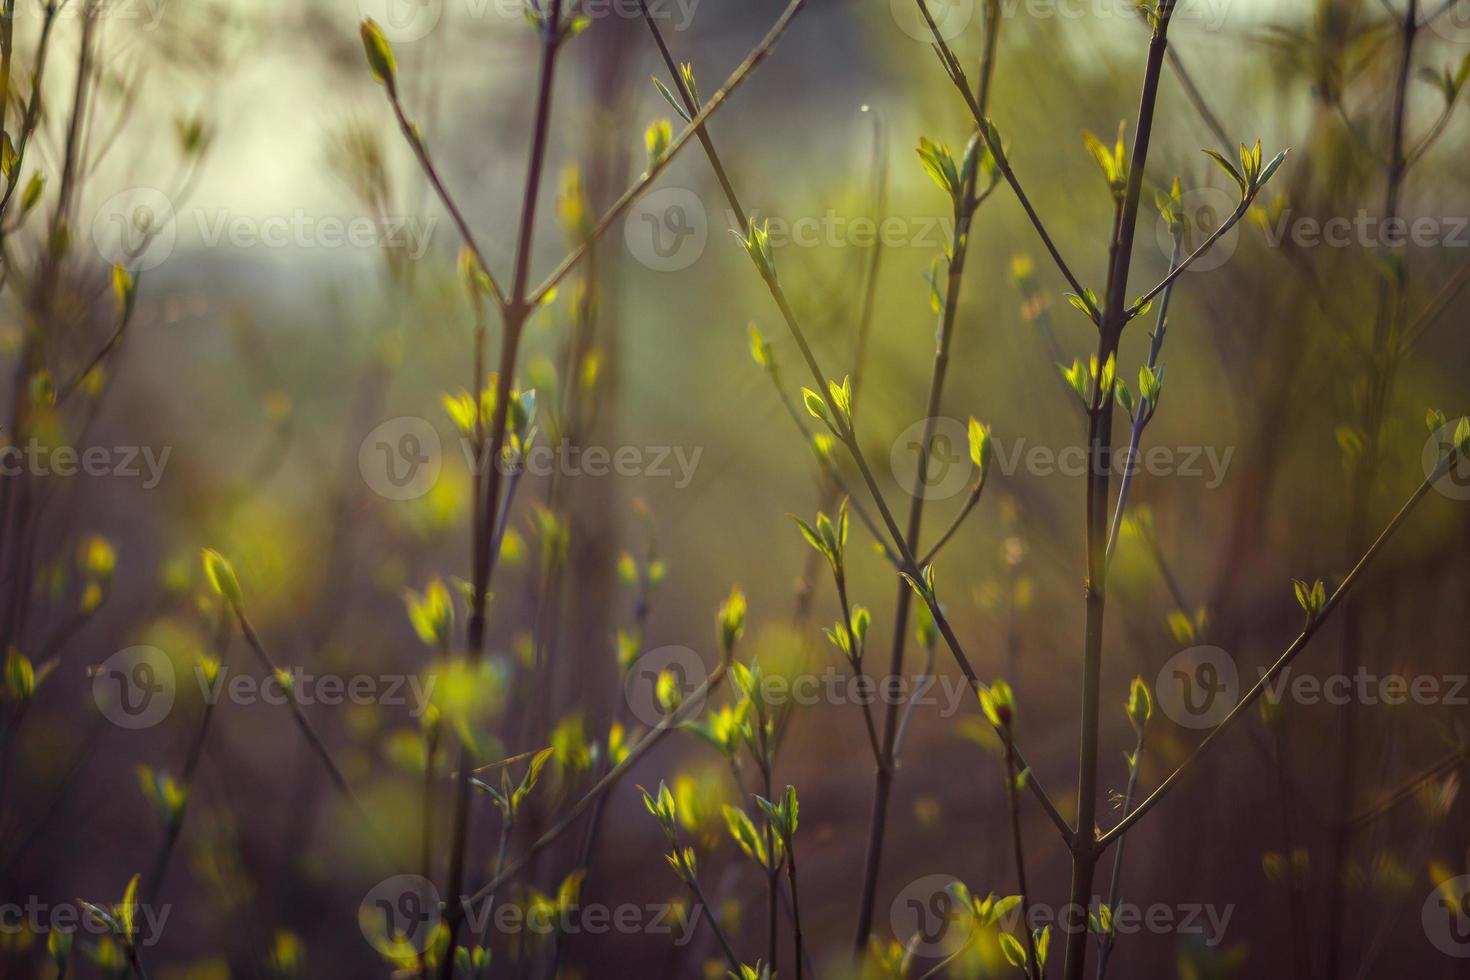 gli alberi fioriscono in primavera. rami di un albero con piccole foglie verdi. sfondo verde chiaro. vista frontale foto